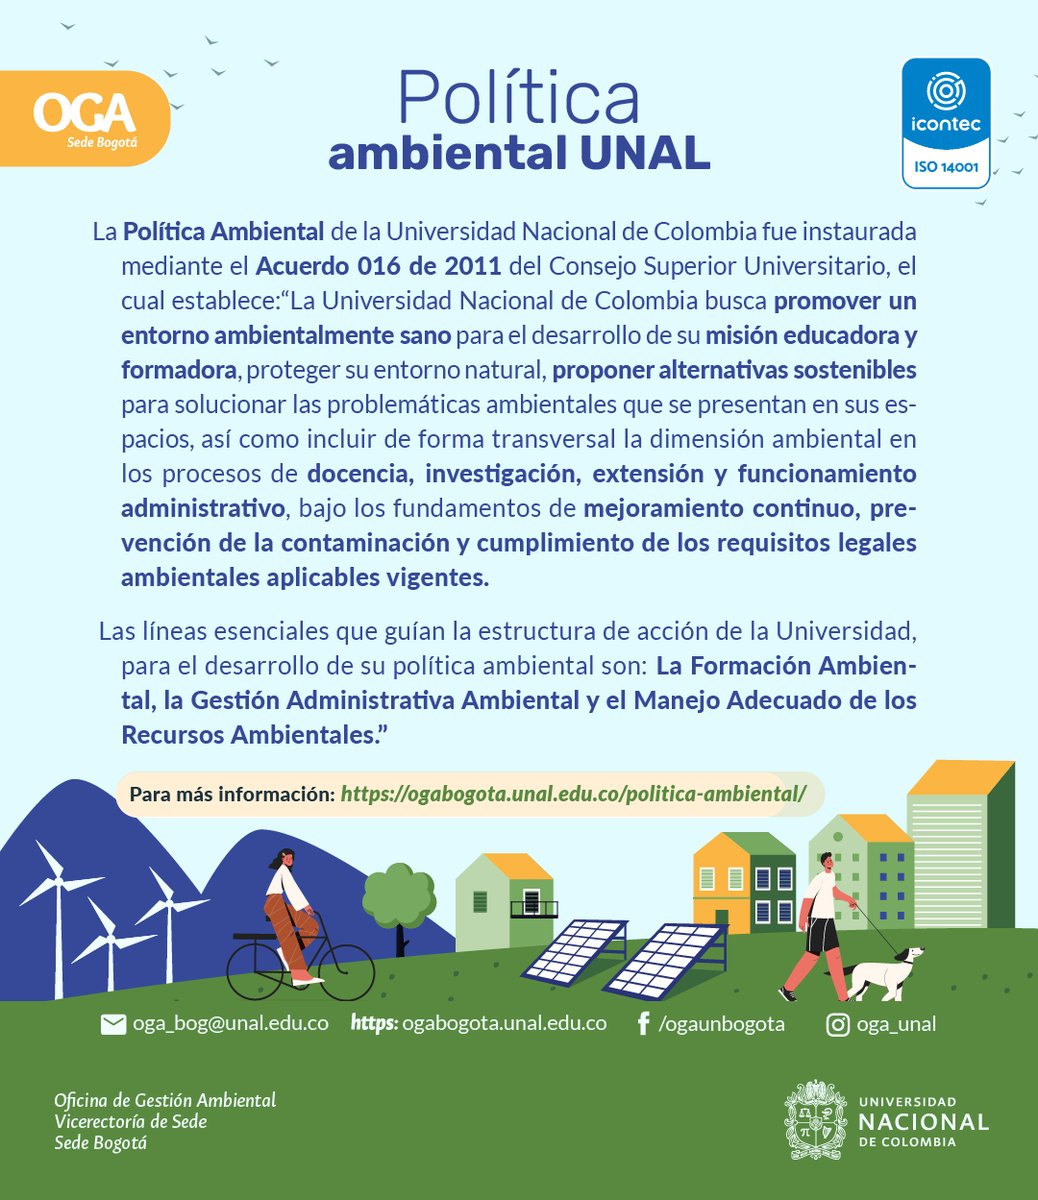 #SostenibilidadUNAL Los invitamos a consultar la Política Ambiental de la Sede @BogotaUNAL
¡Queremos que cada uno de ustedes haga parte de un entorno ambientalmente sano! Visita nuestra página web y conoce más 🌳 ogabogota.unal.edu.co | #SomosUNAL #OGA